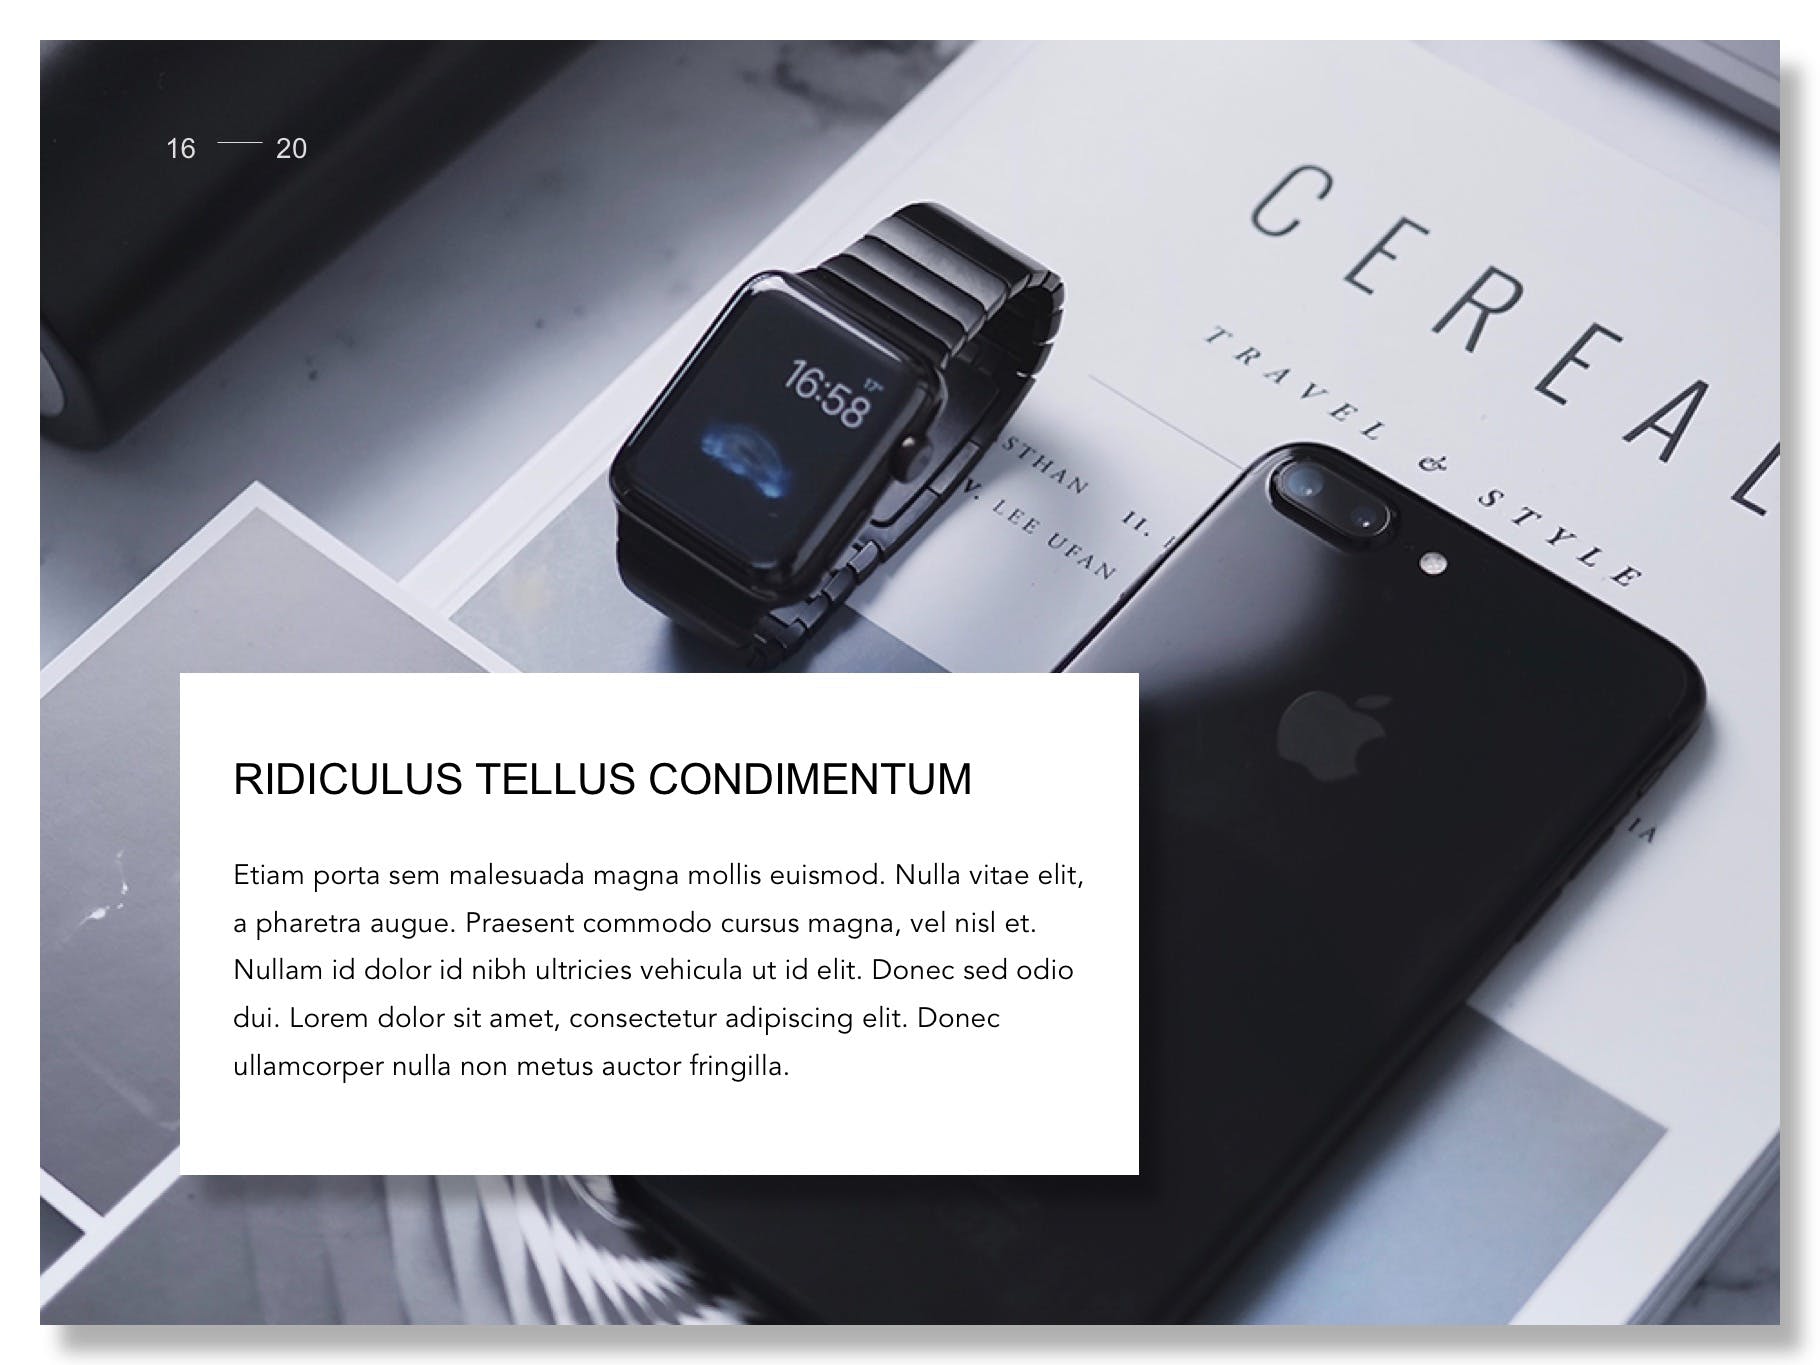 科技感产品设计展示谷歌幻灯片模板 Product Showcase Google Slides Template插图(13)